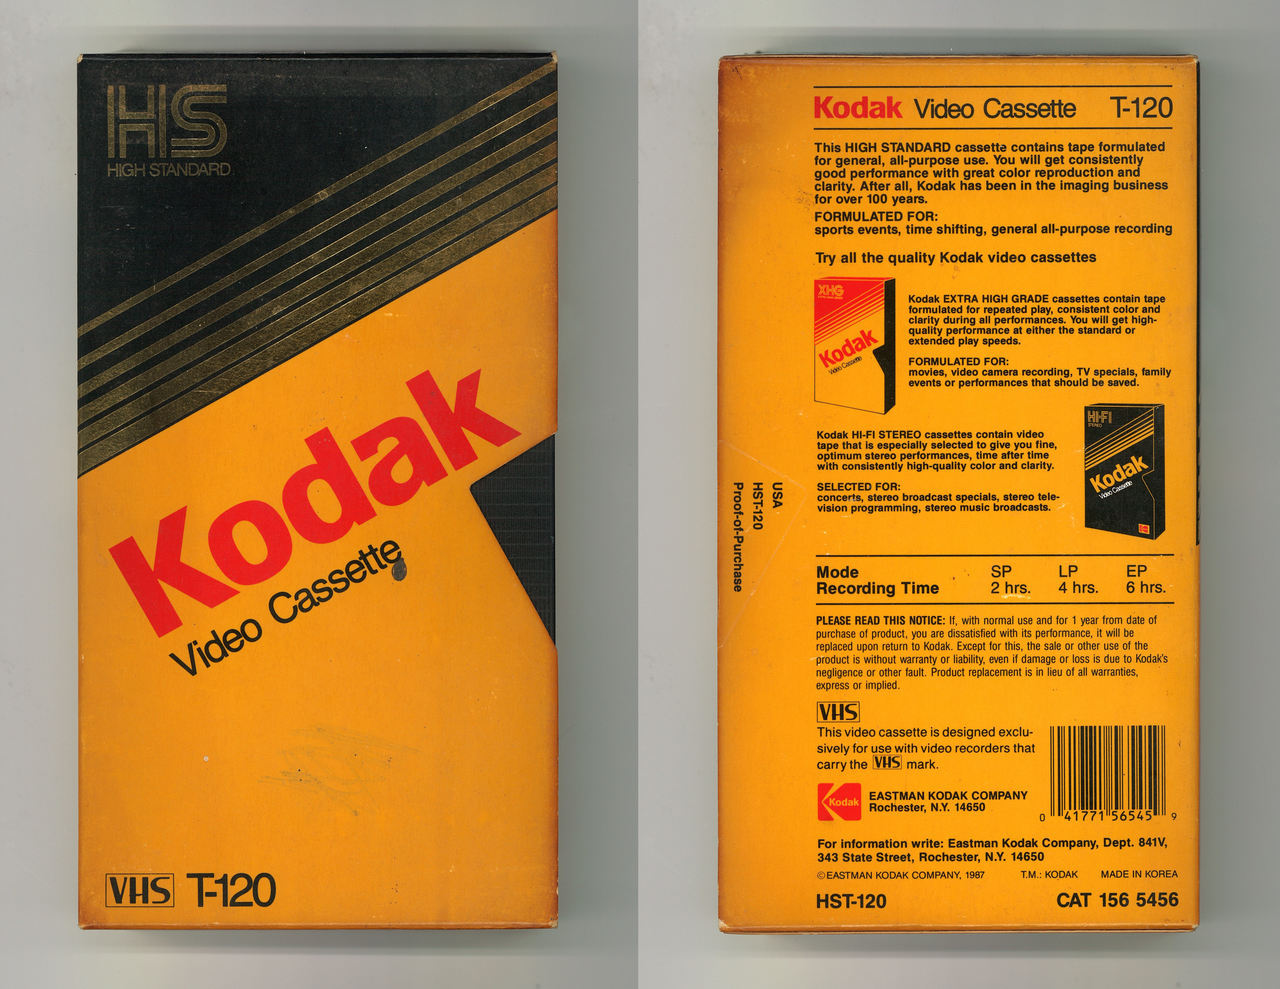 VAULT OF VHS — Kodak HS High Standard Video Cassette VHS T-120